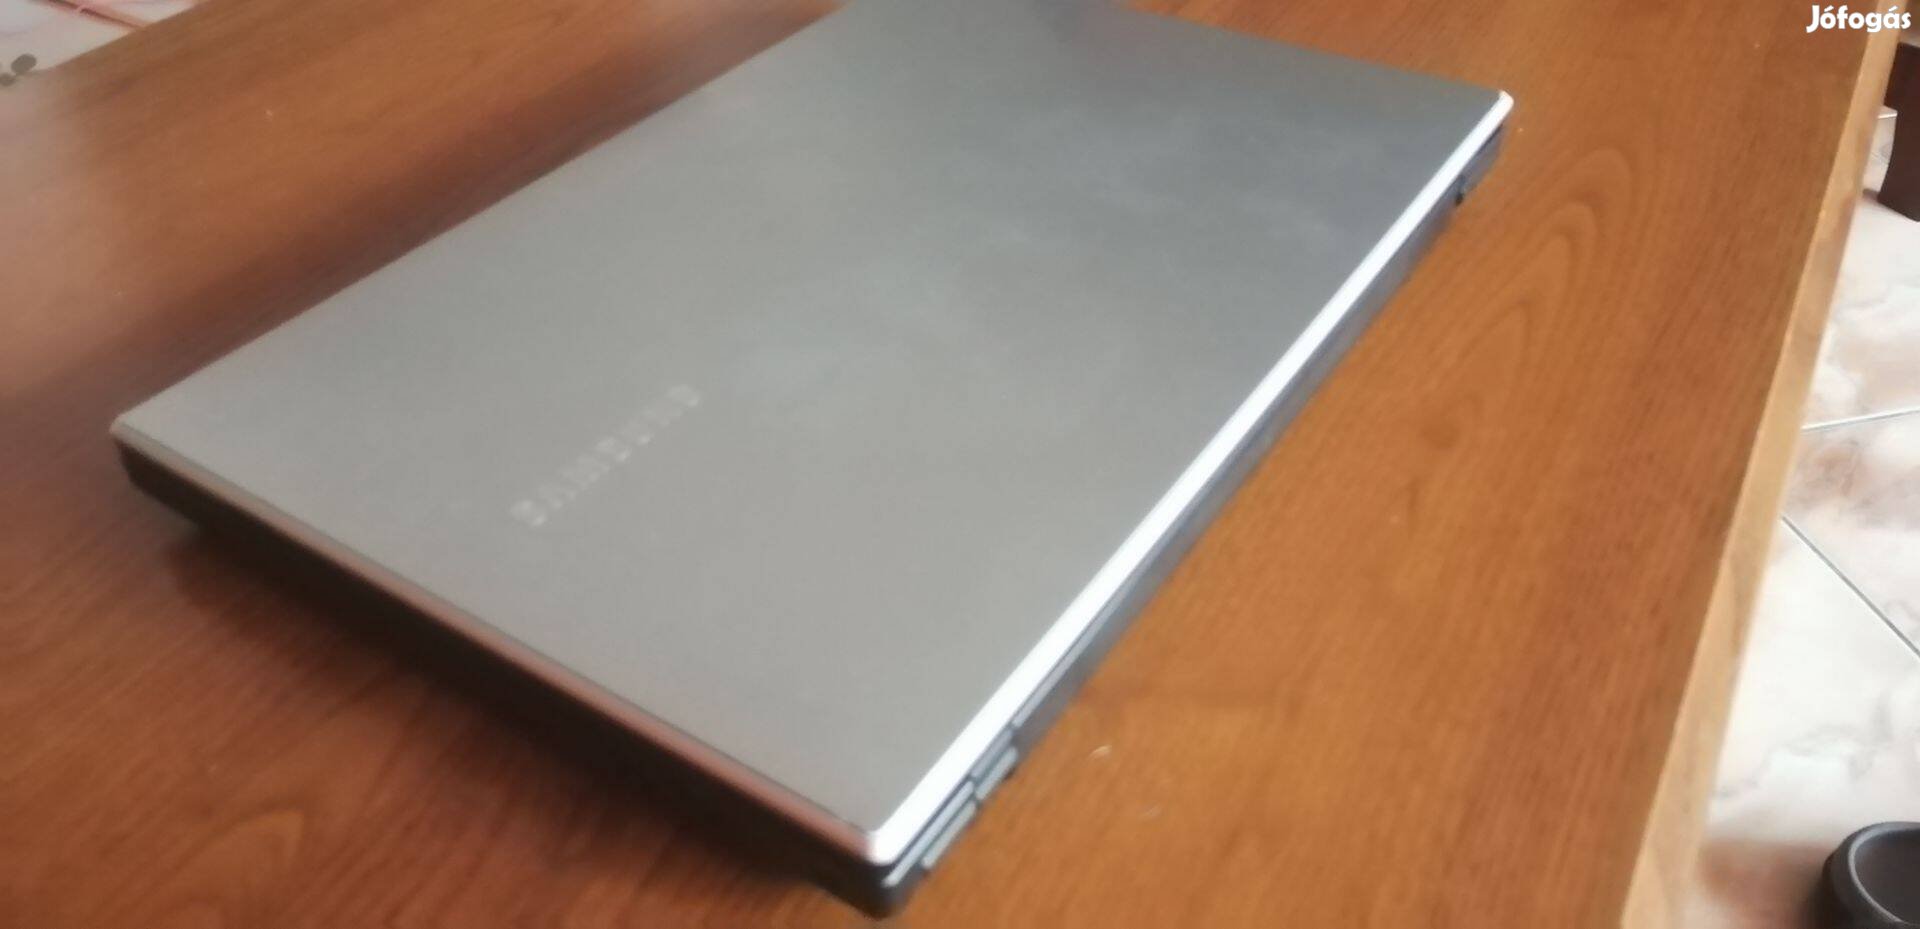 15" Samsung laptop, erős 4 magos A6 proci, jó akku, töltő